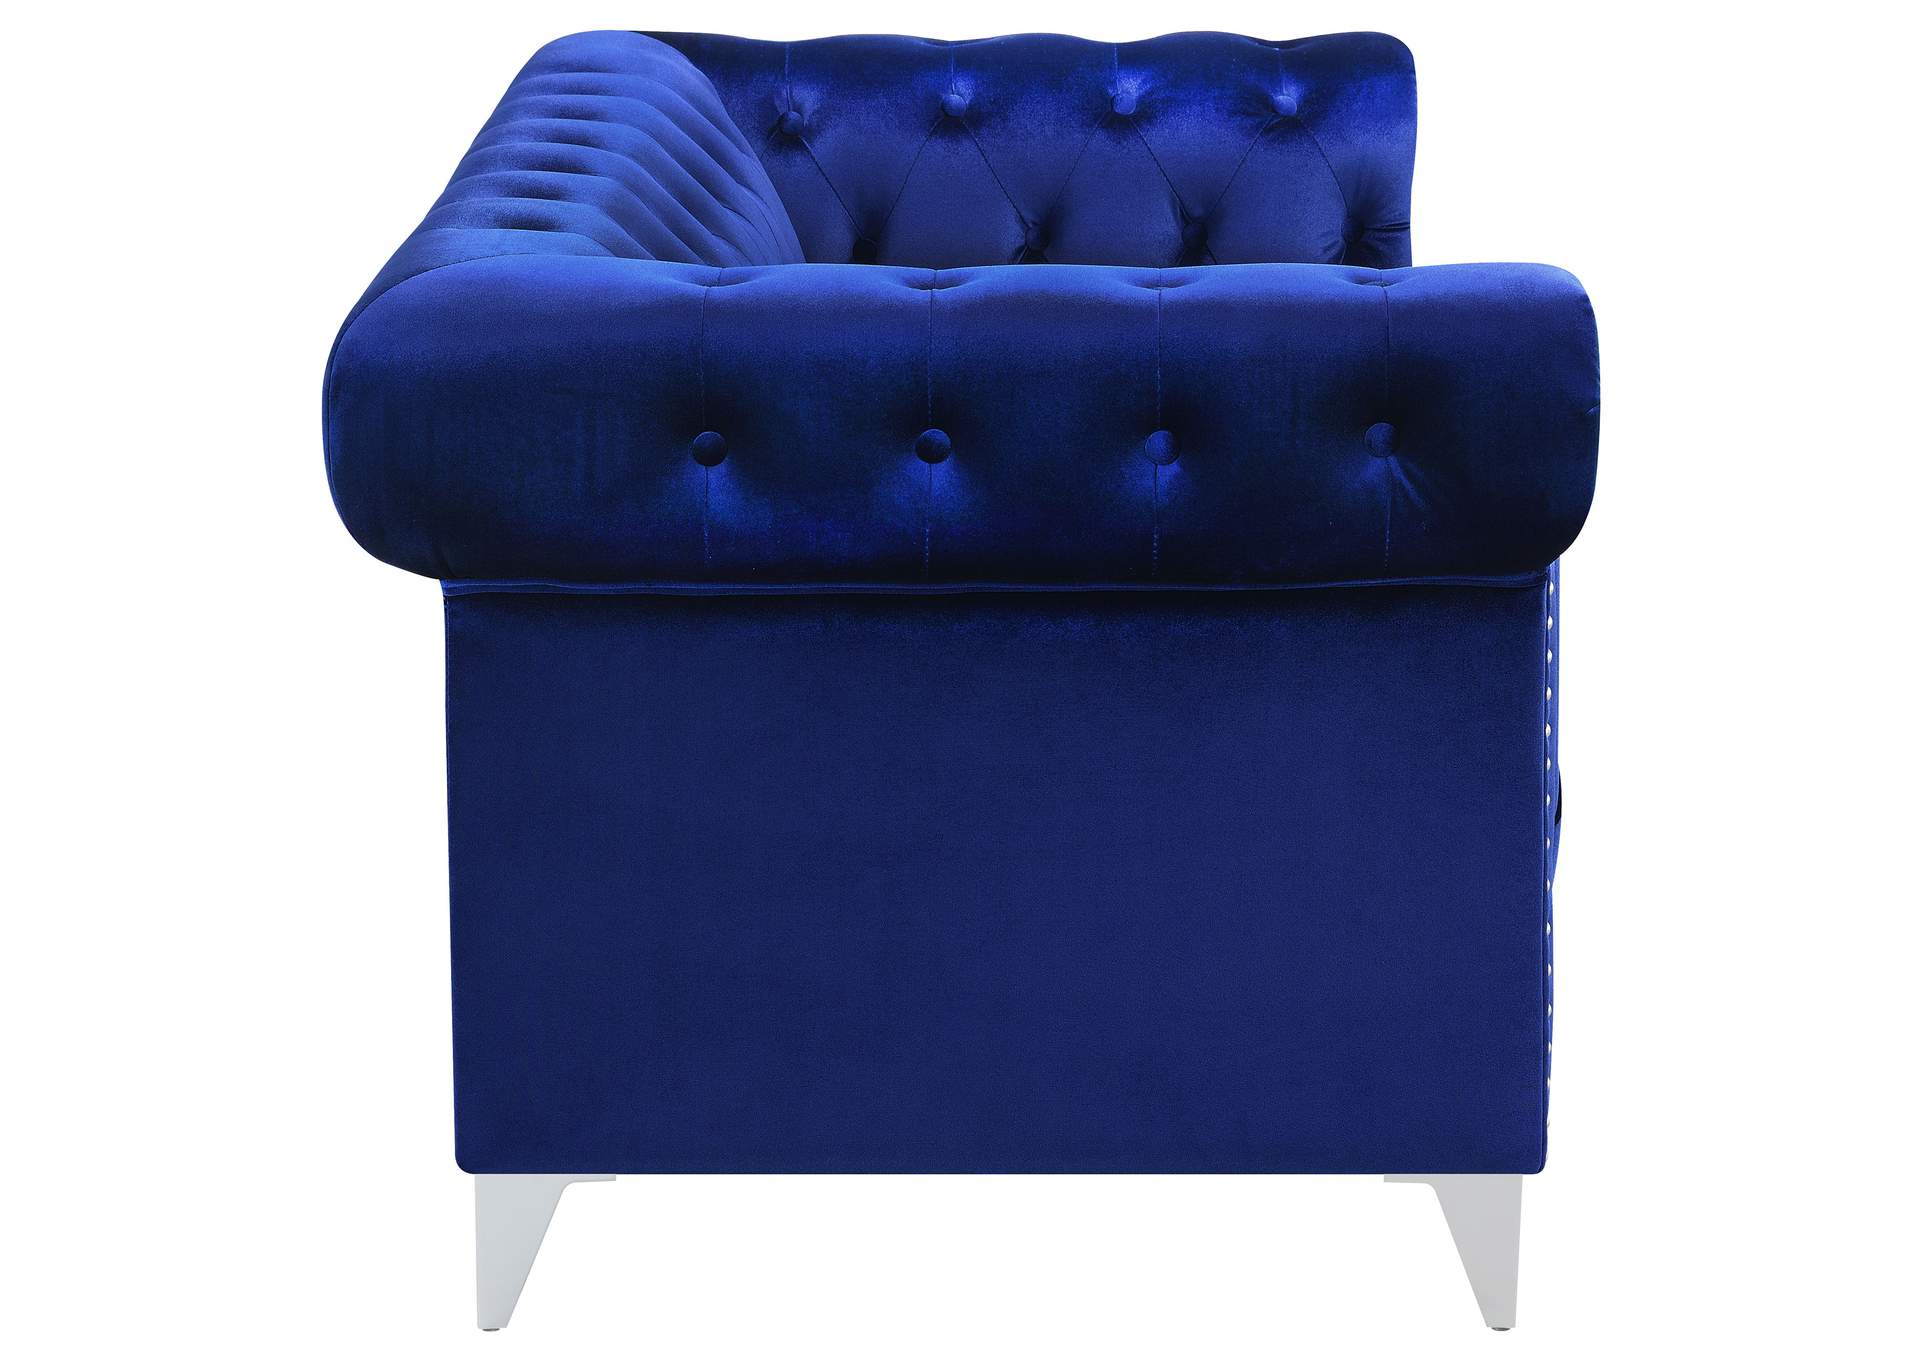 Bleker Tufted Tuxedo Arm Loveseat Blue,Coaster Furniture